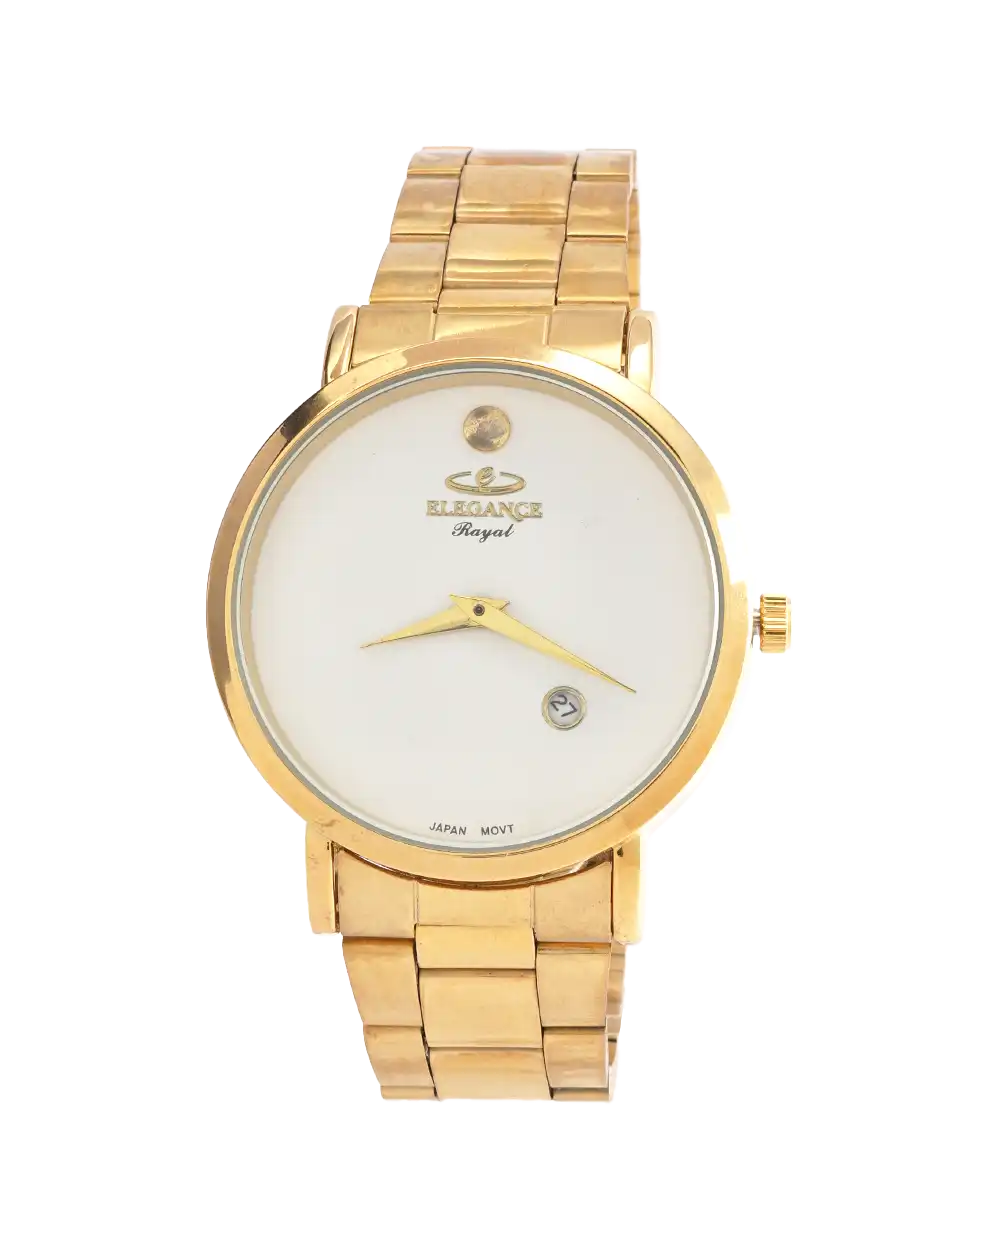 خرید ساعت مچی مردانه الگانس ELEGANCE مدل 1781 استیل رنگ طلایی مناسب برای آقایان و پسران به همراه جعبه و ارسال رایگان به سراسر ایران درب منزل